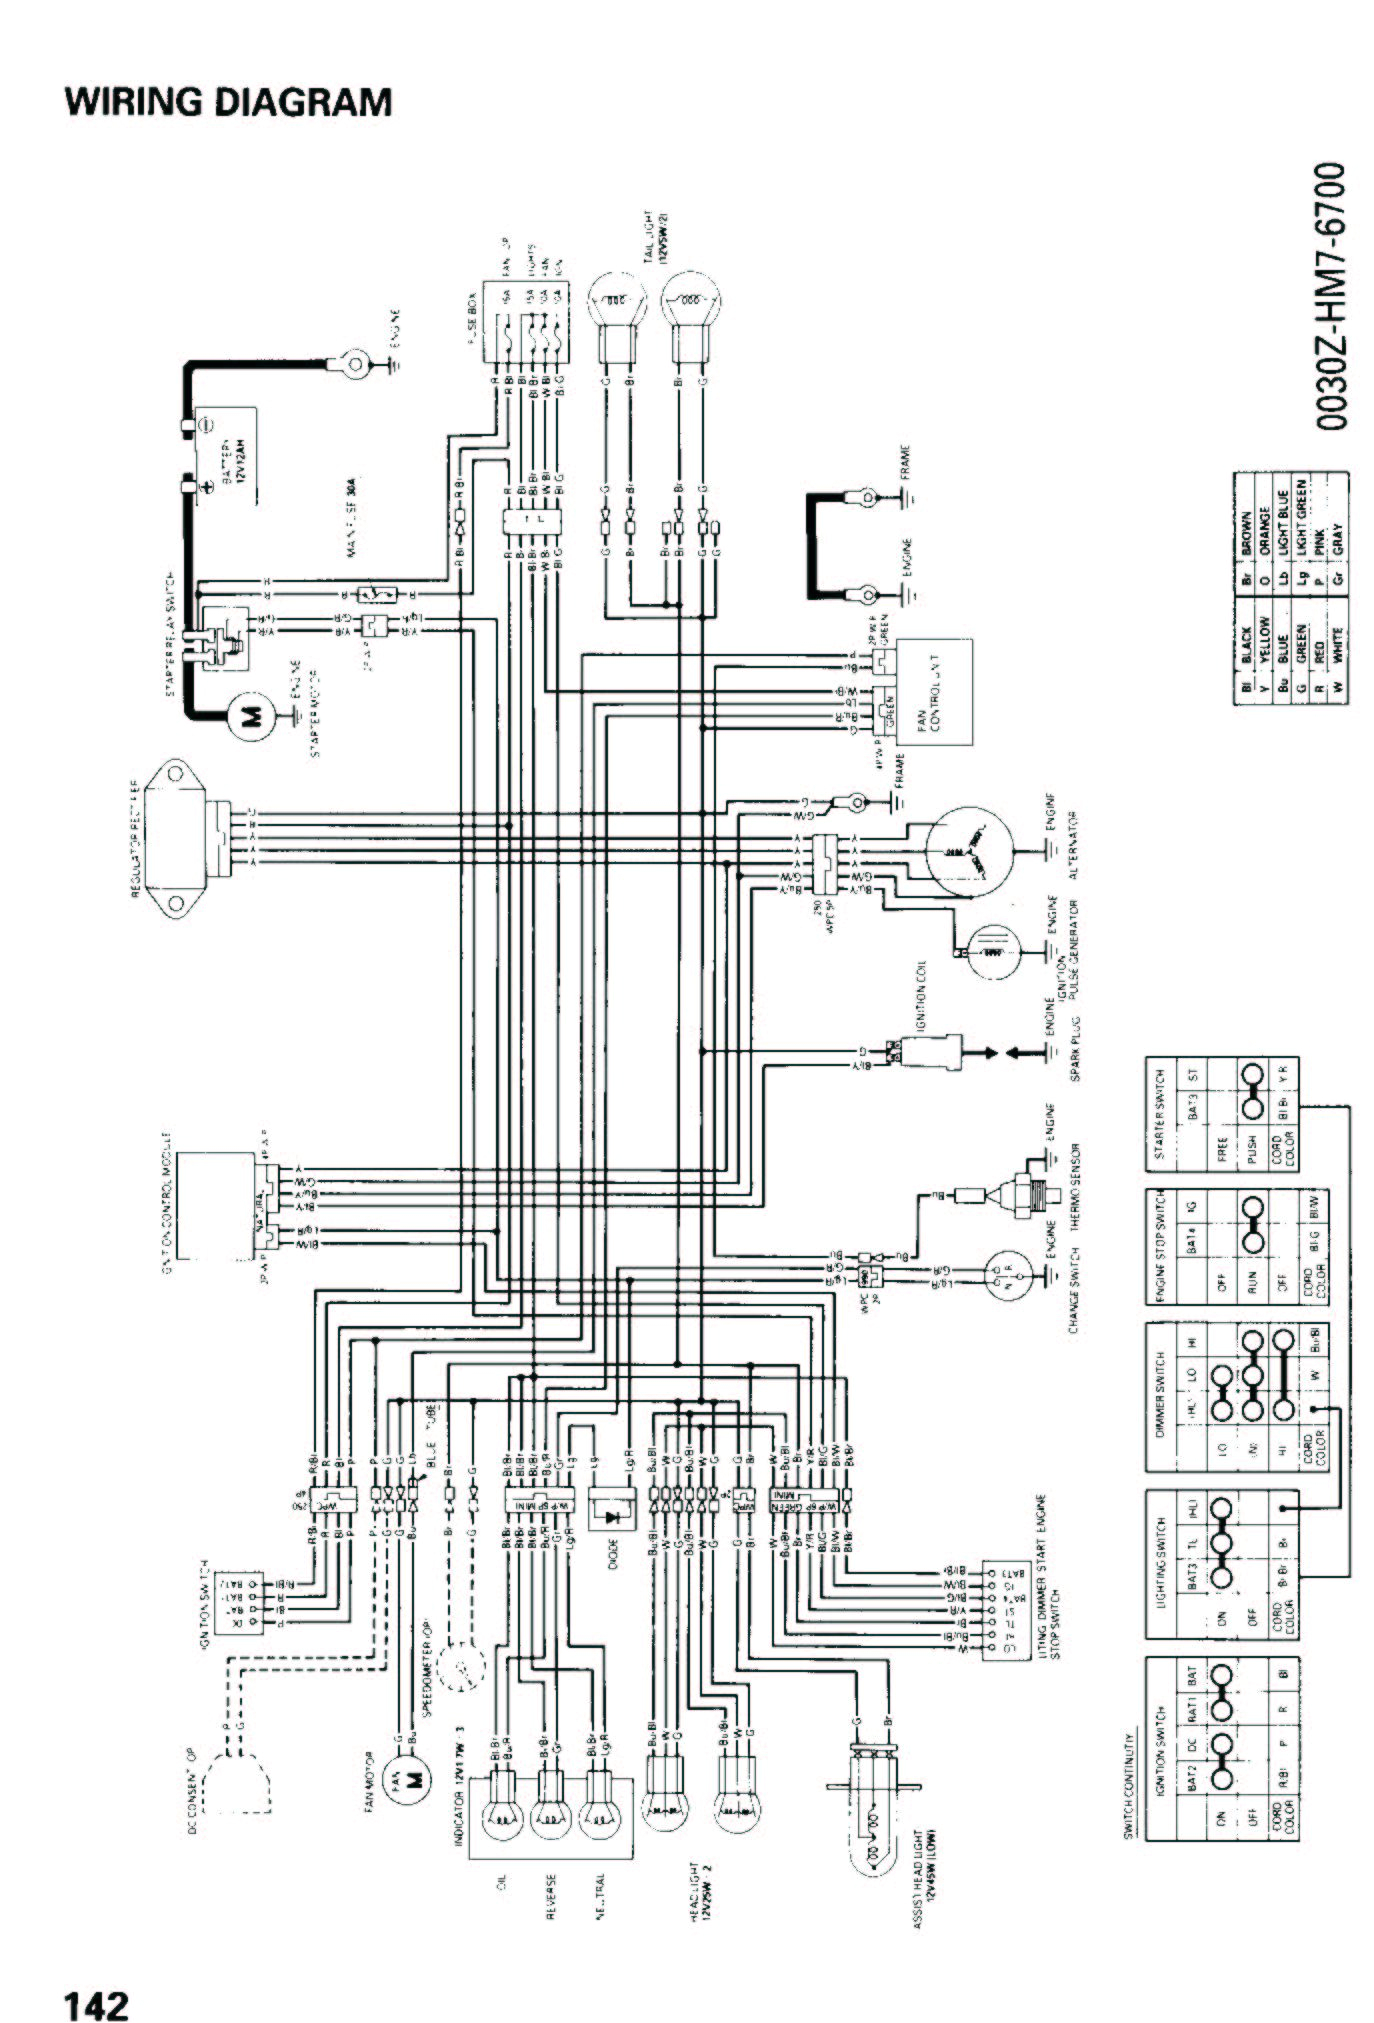 honda cb750 wiring diagram honda wiring diagram images